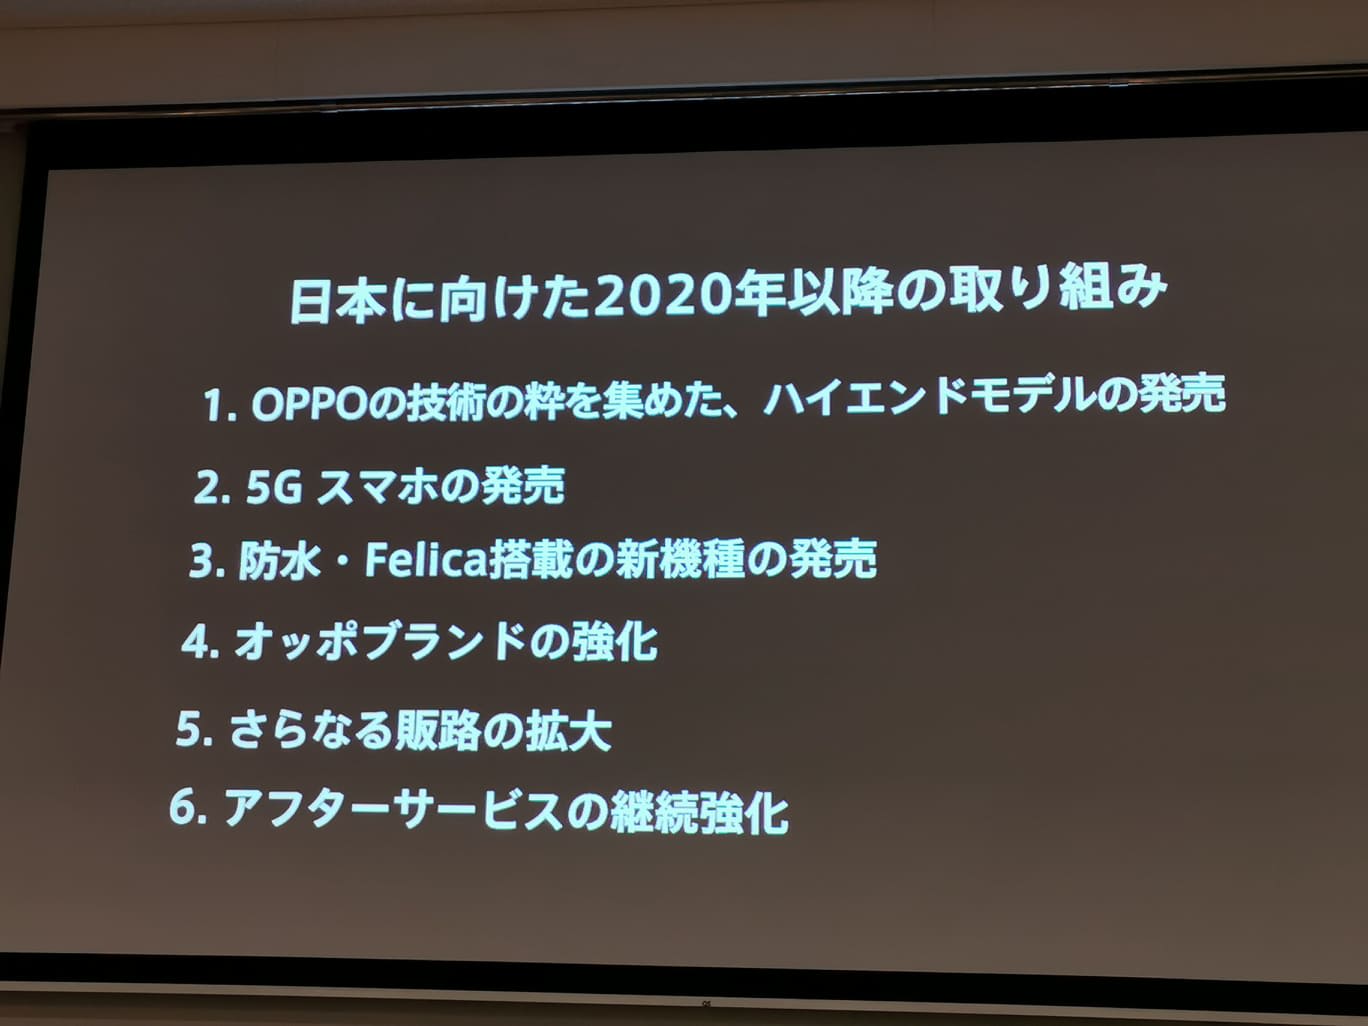 Oppo 日本で5gスマホ発売へ Engadget 日本版